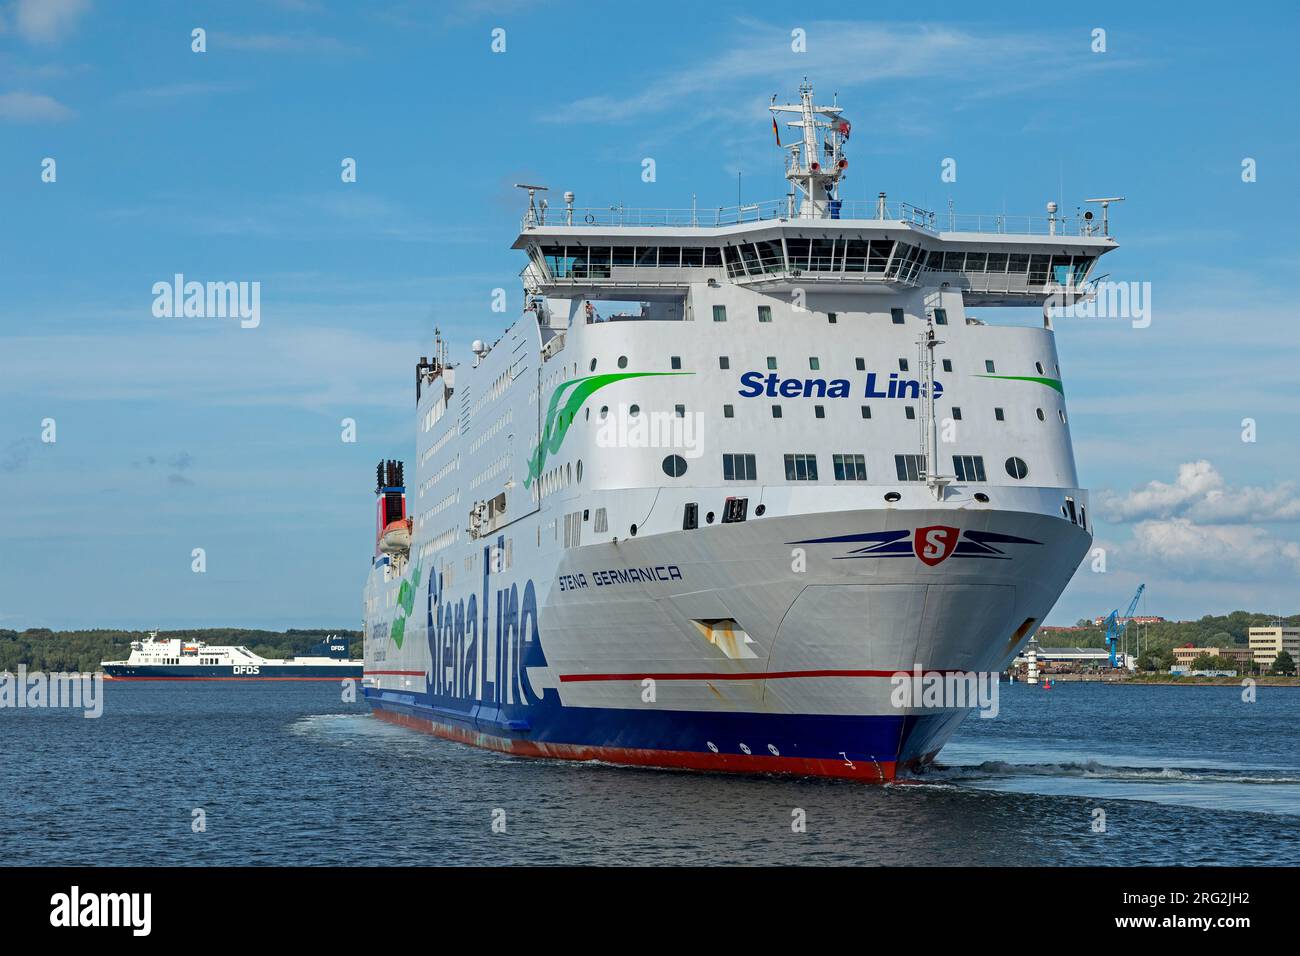 Stena Line ferry, Kiel, Schleswig-Holstein, Germany Stock Photo